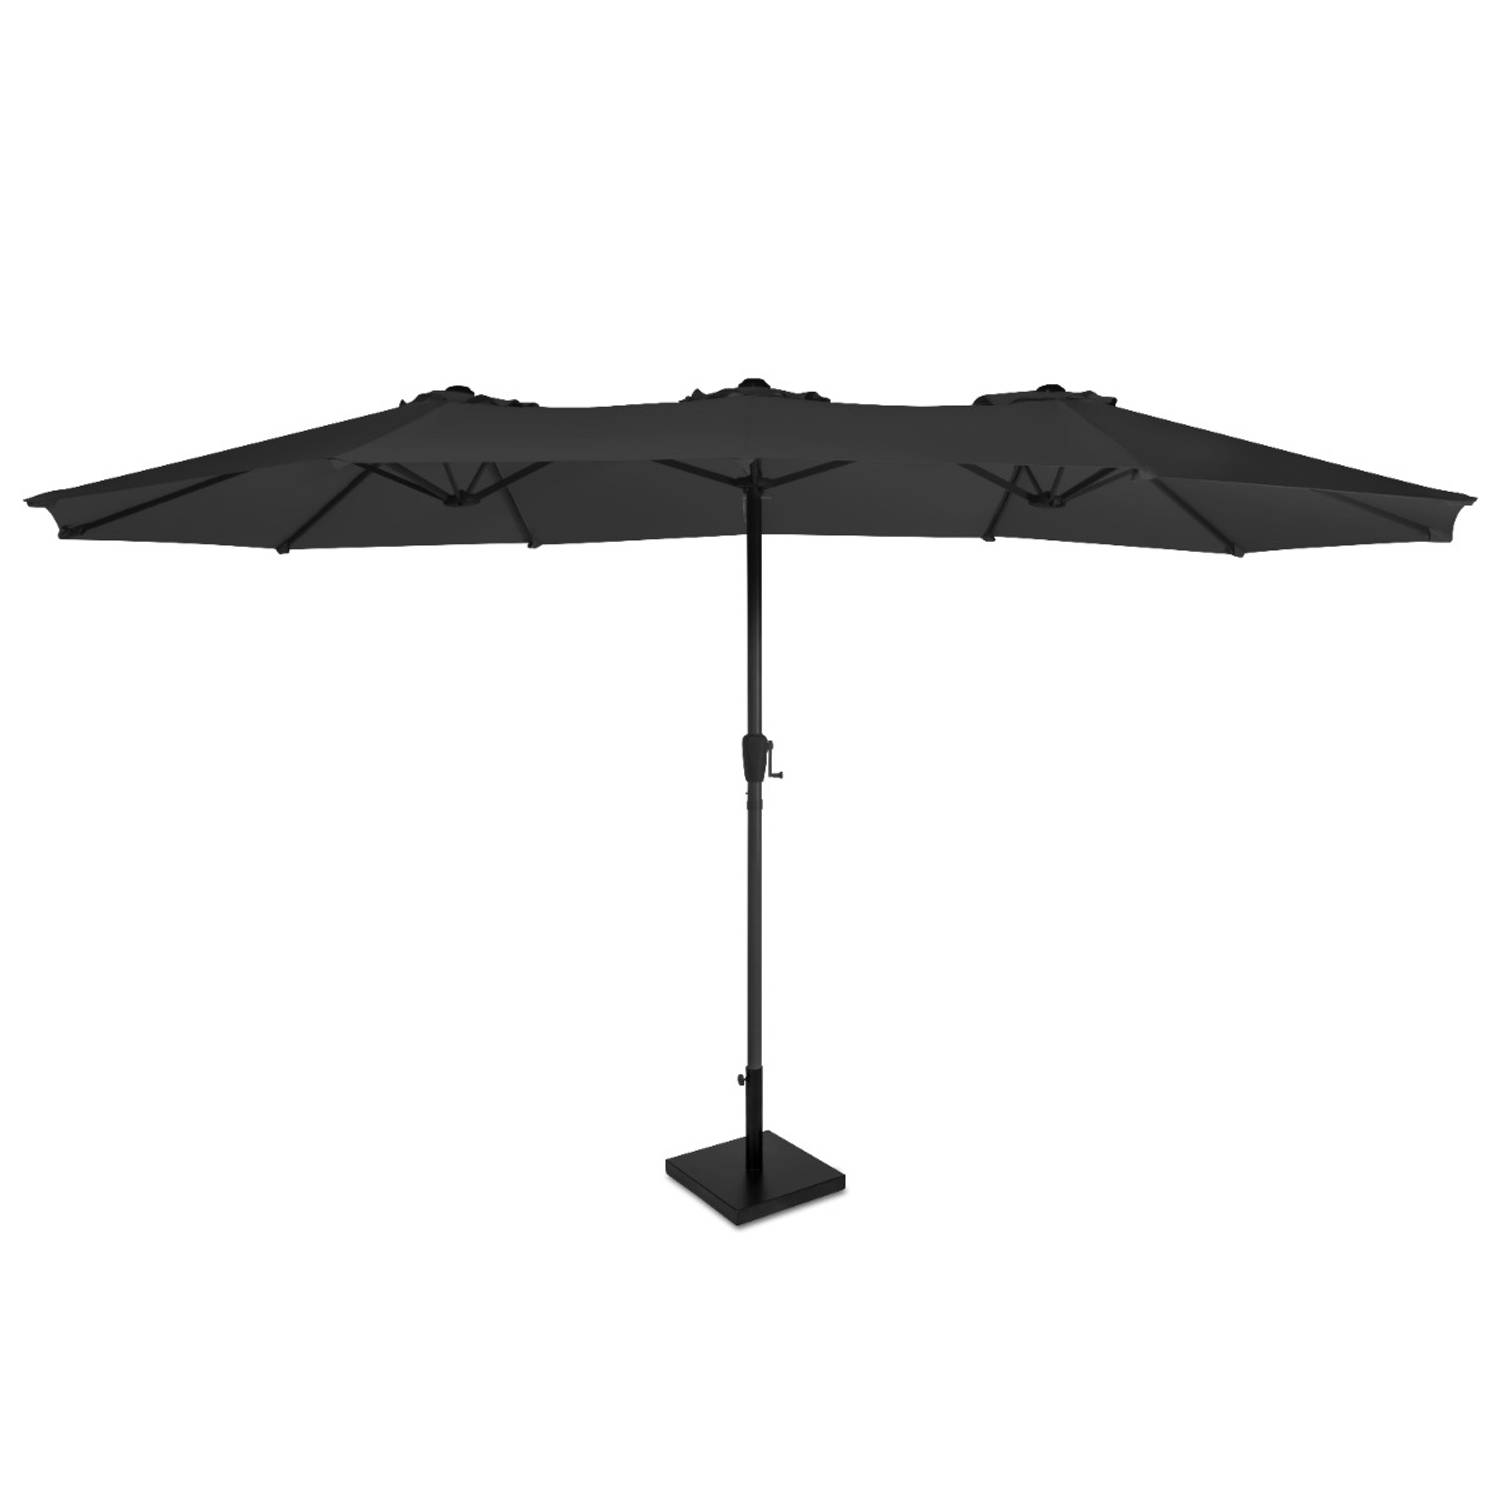 VONROC Premium Parasol Iseo - 460x270cm – Duurzame parasol – combi set incl. parasolvoet van 26 kg – Extra-large - UV werend doek - Antraciet/Zwart – Incl. beschermhoes